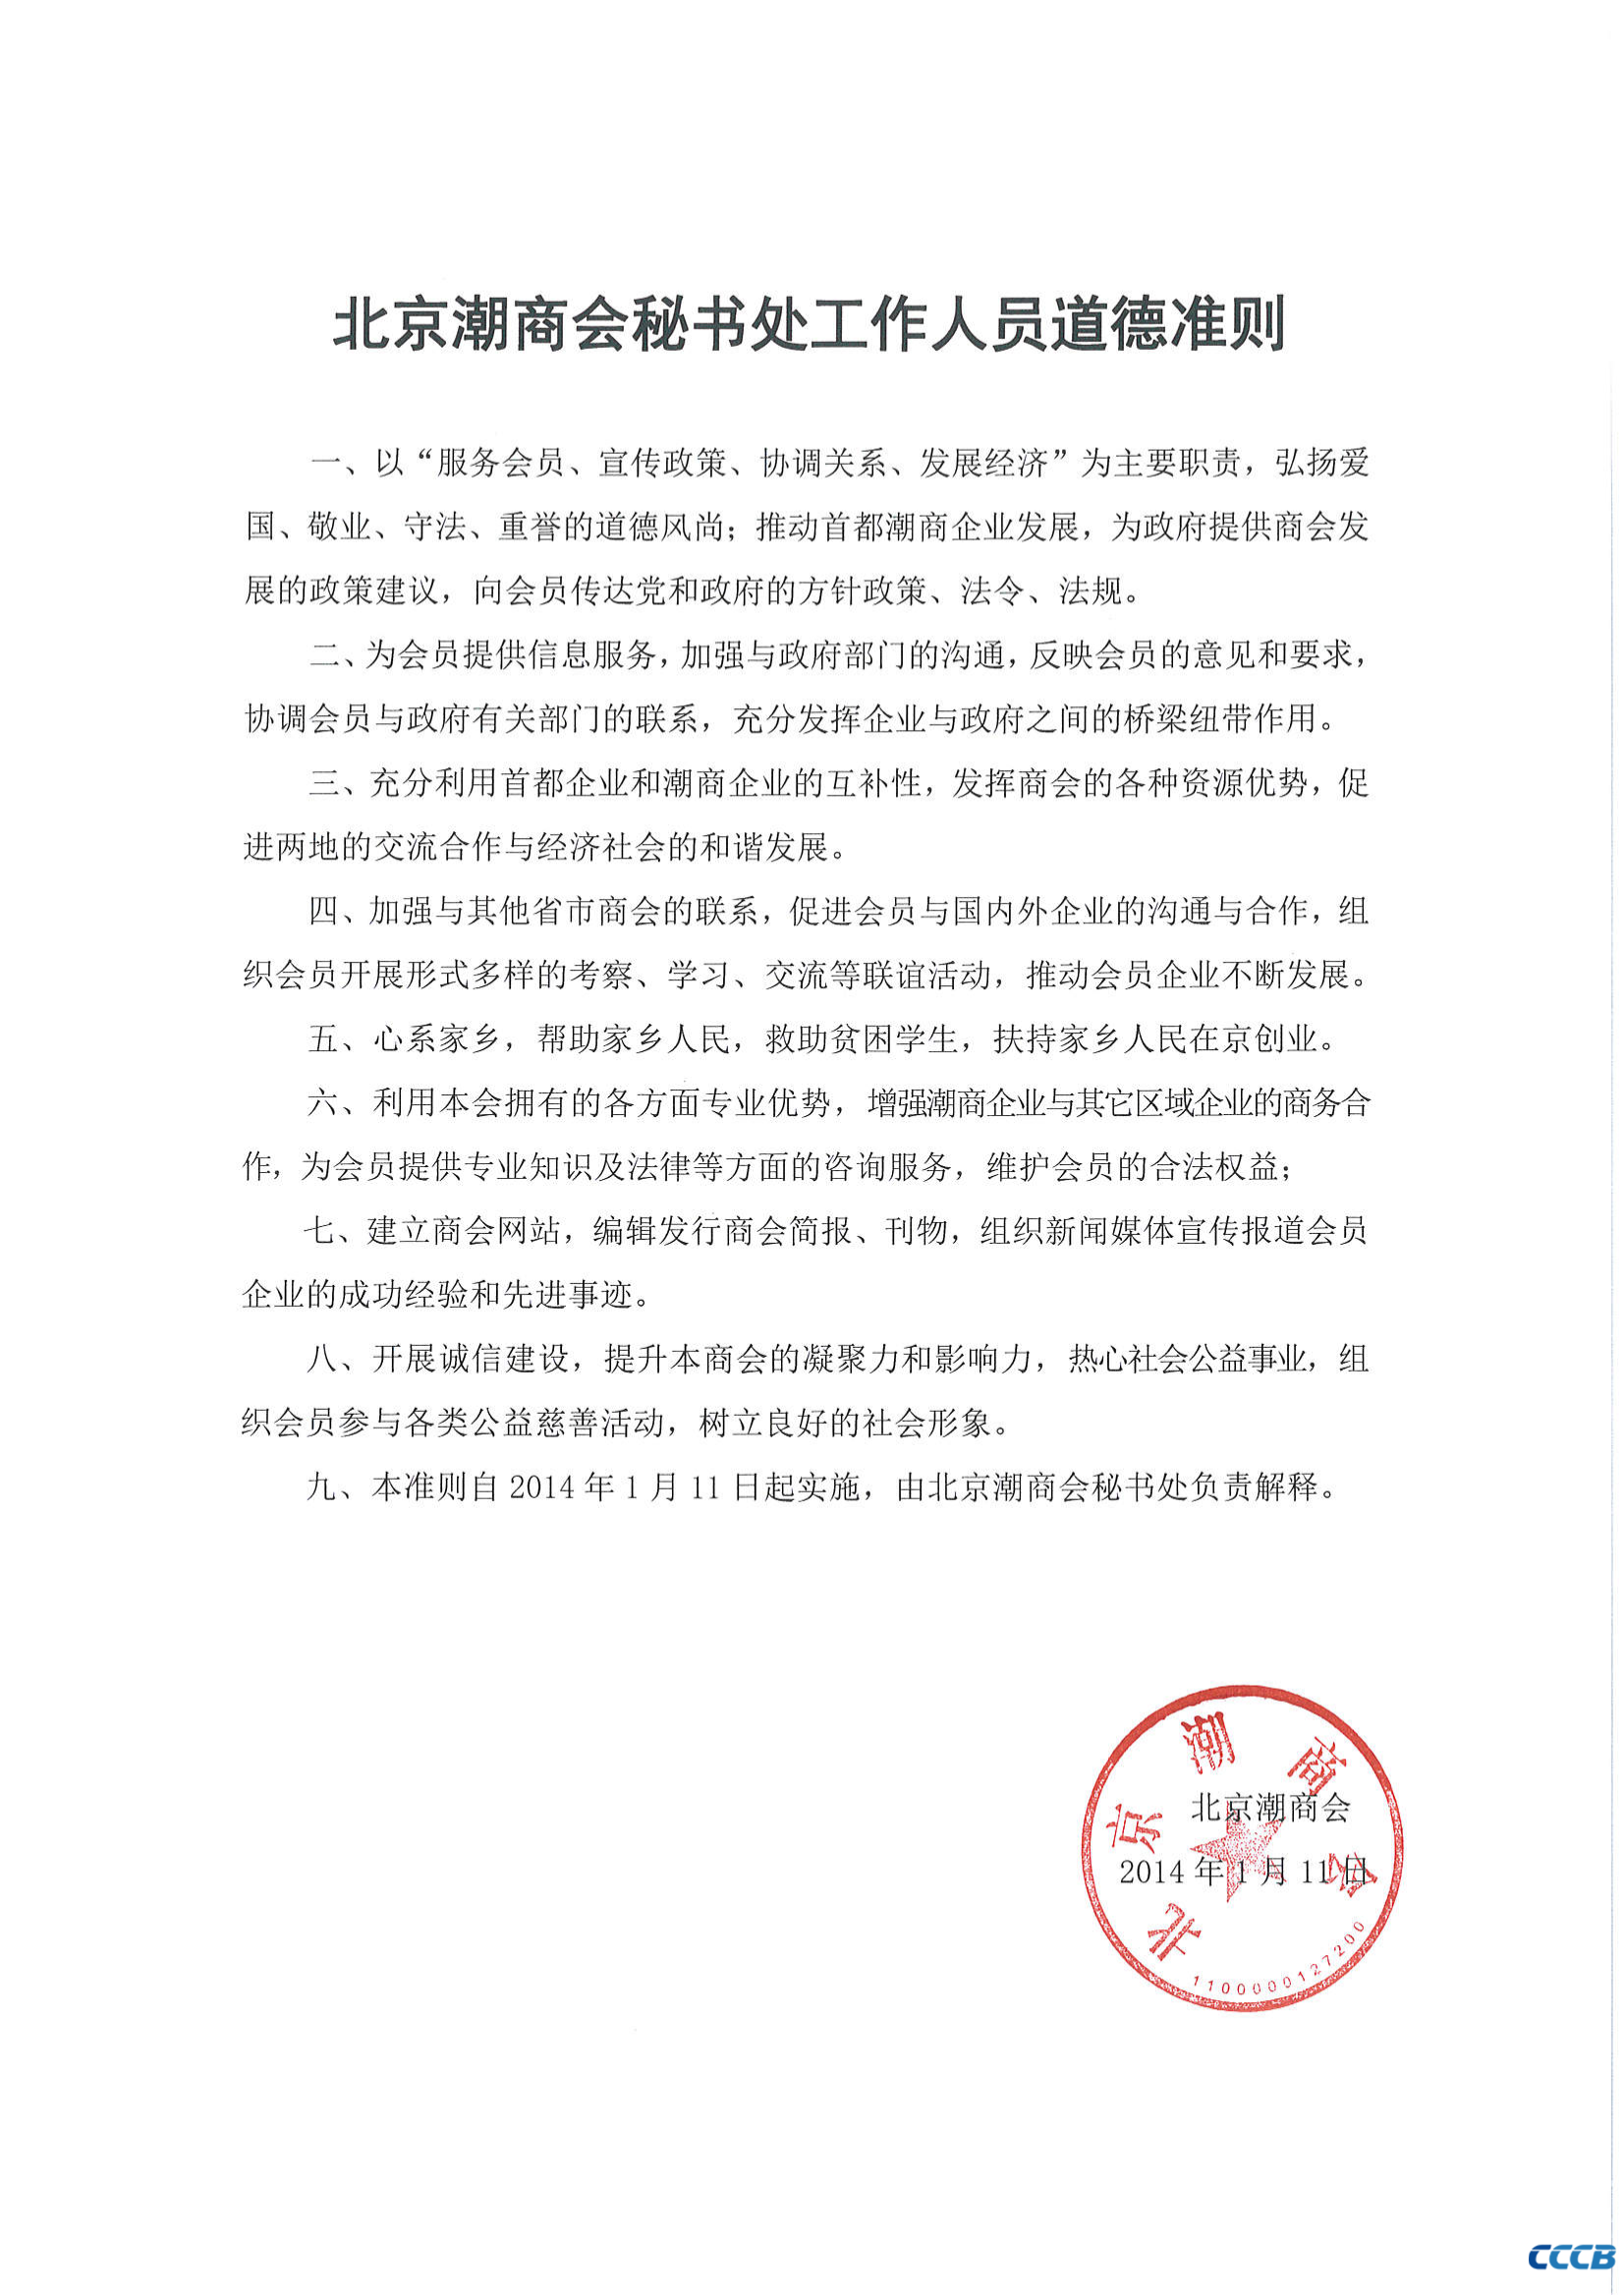 北京潮商会秘书处工作人员道德准则